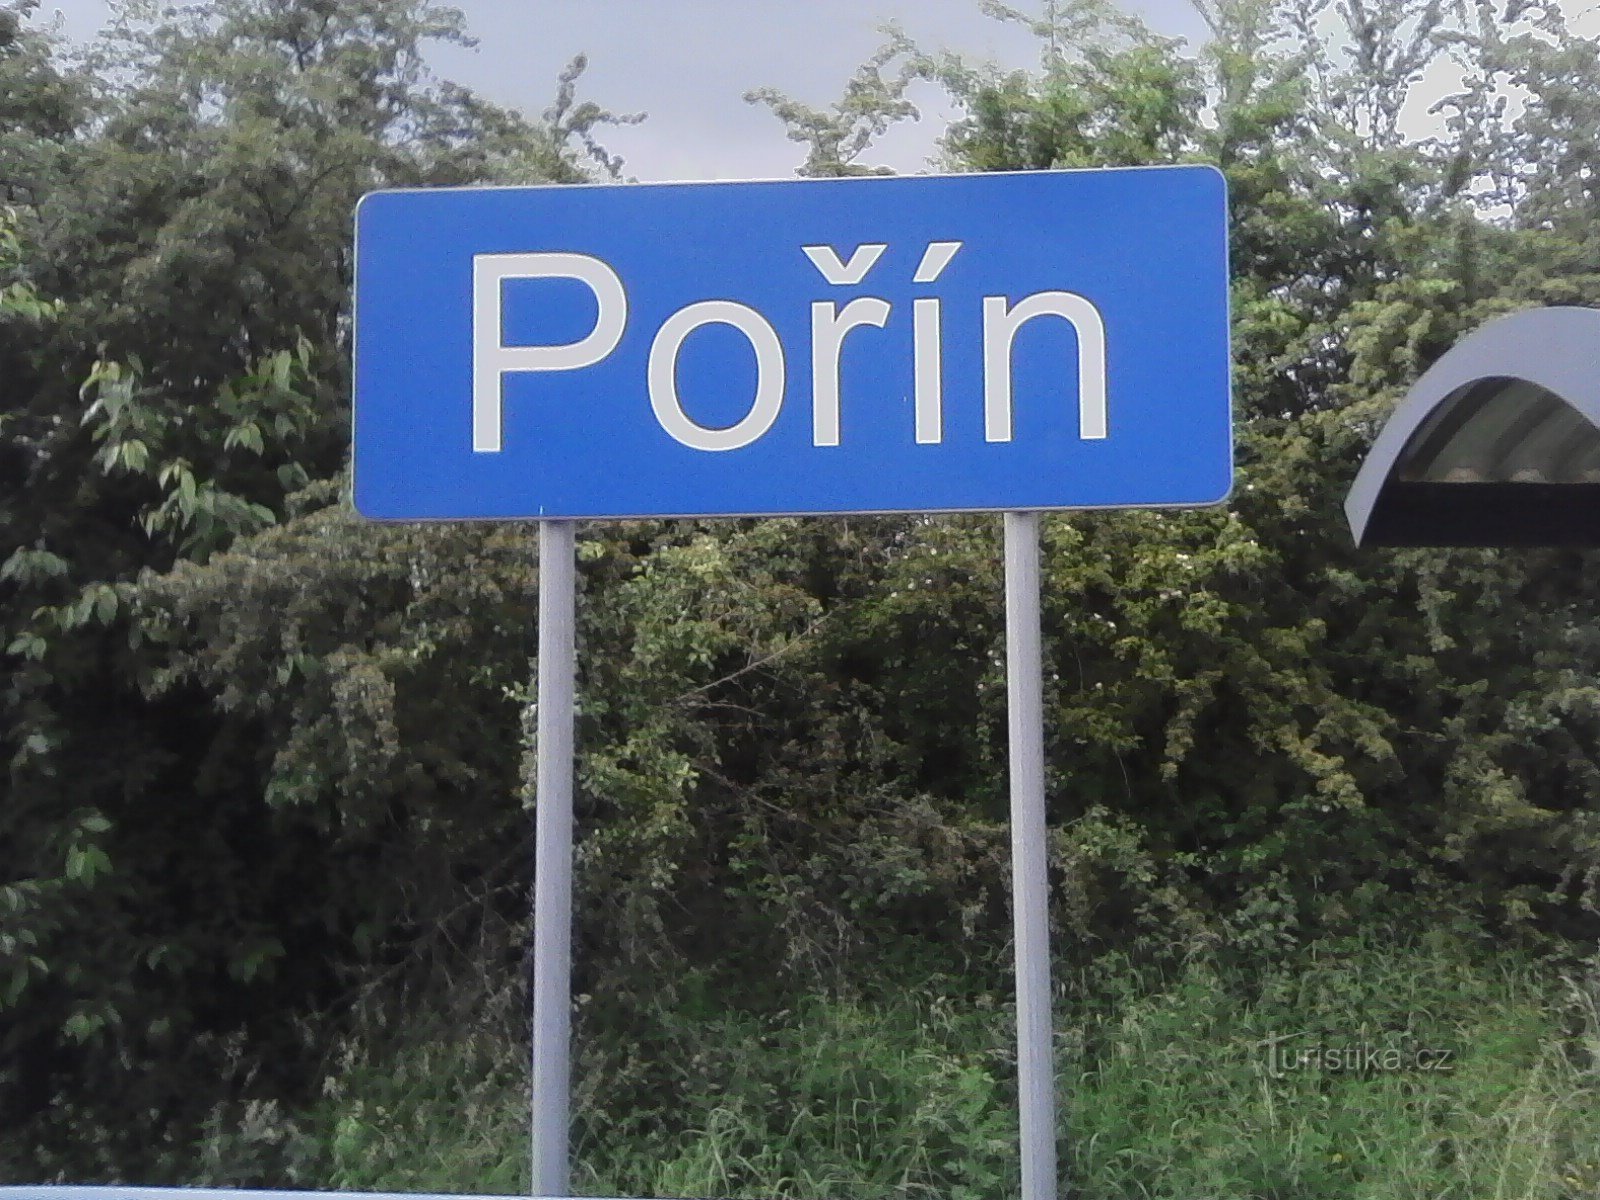 1. Tågstopp i Pořín - början på resan.